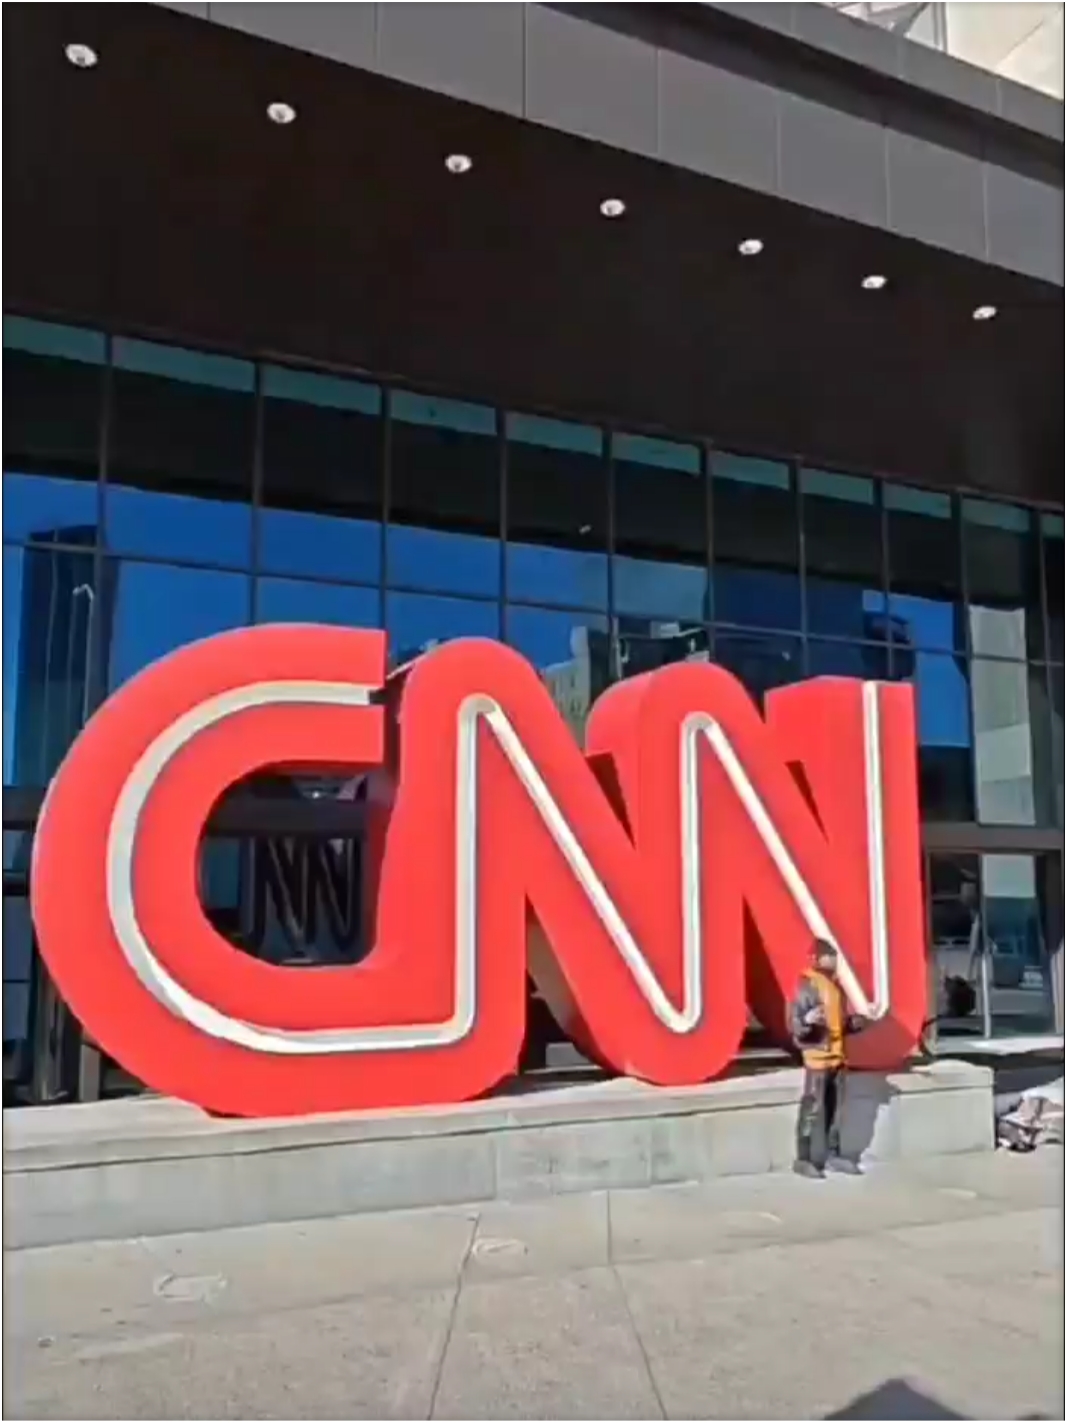 CNN总部